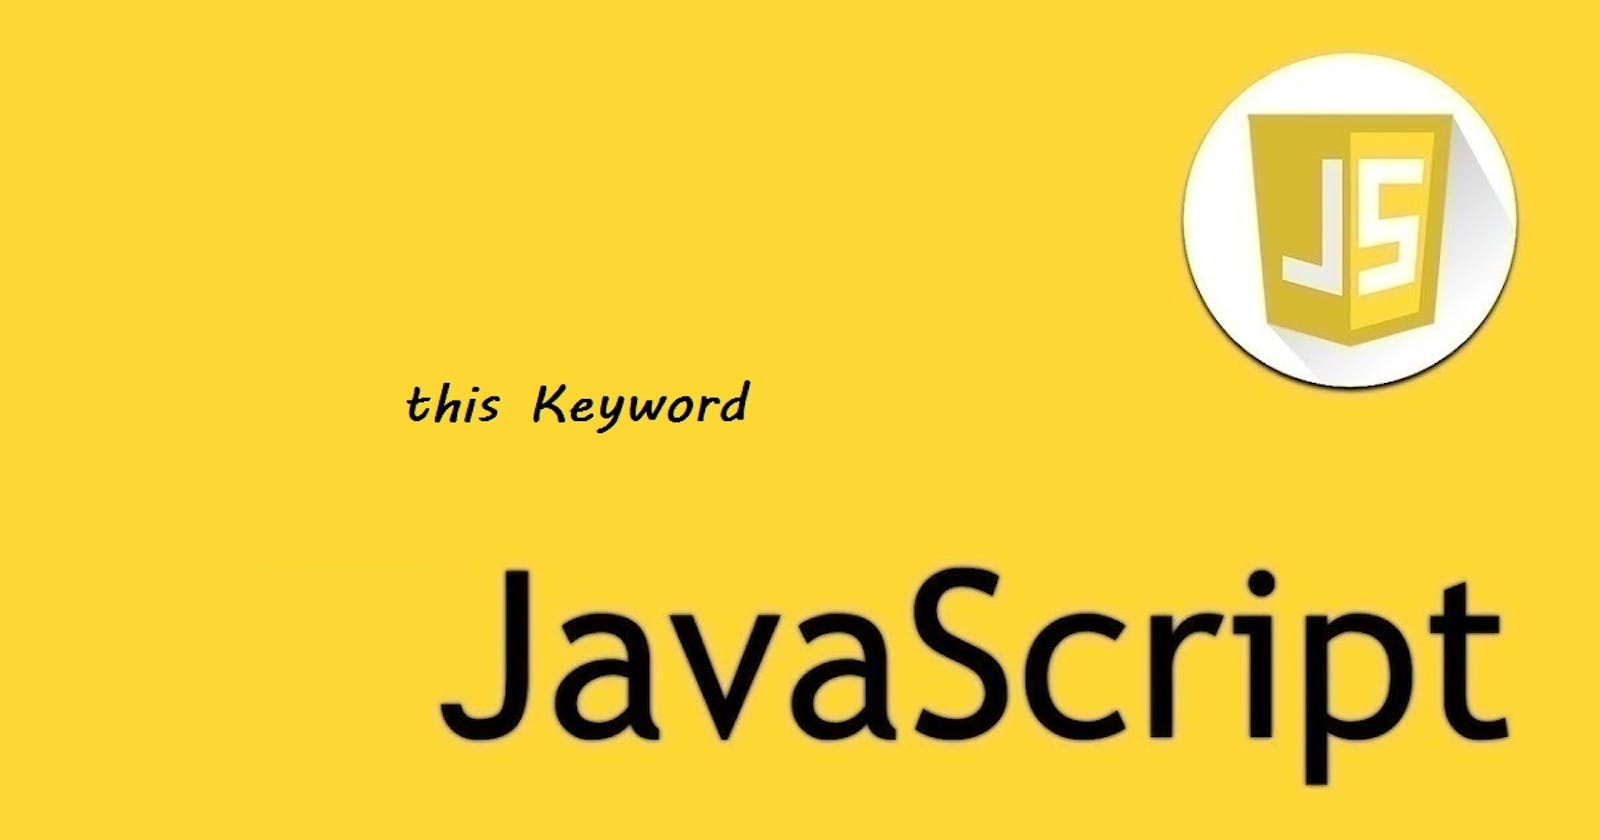 17 - JavaScript - this Keyword